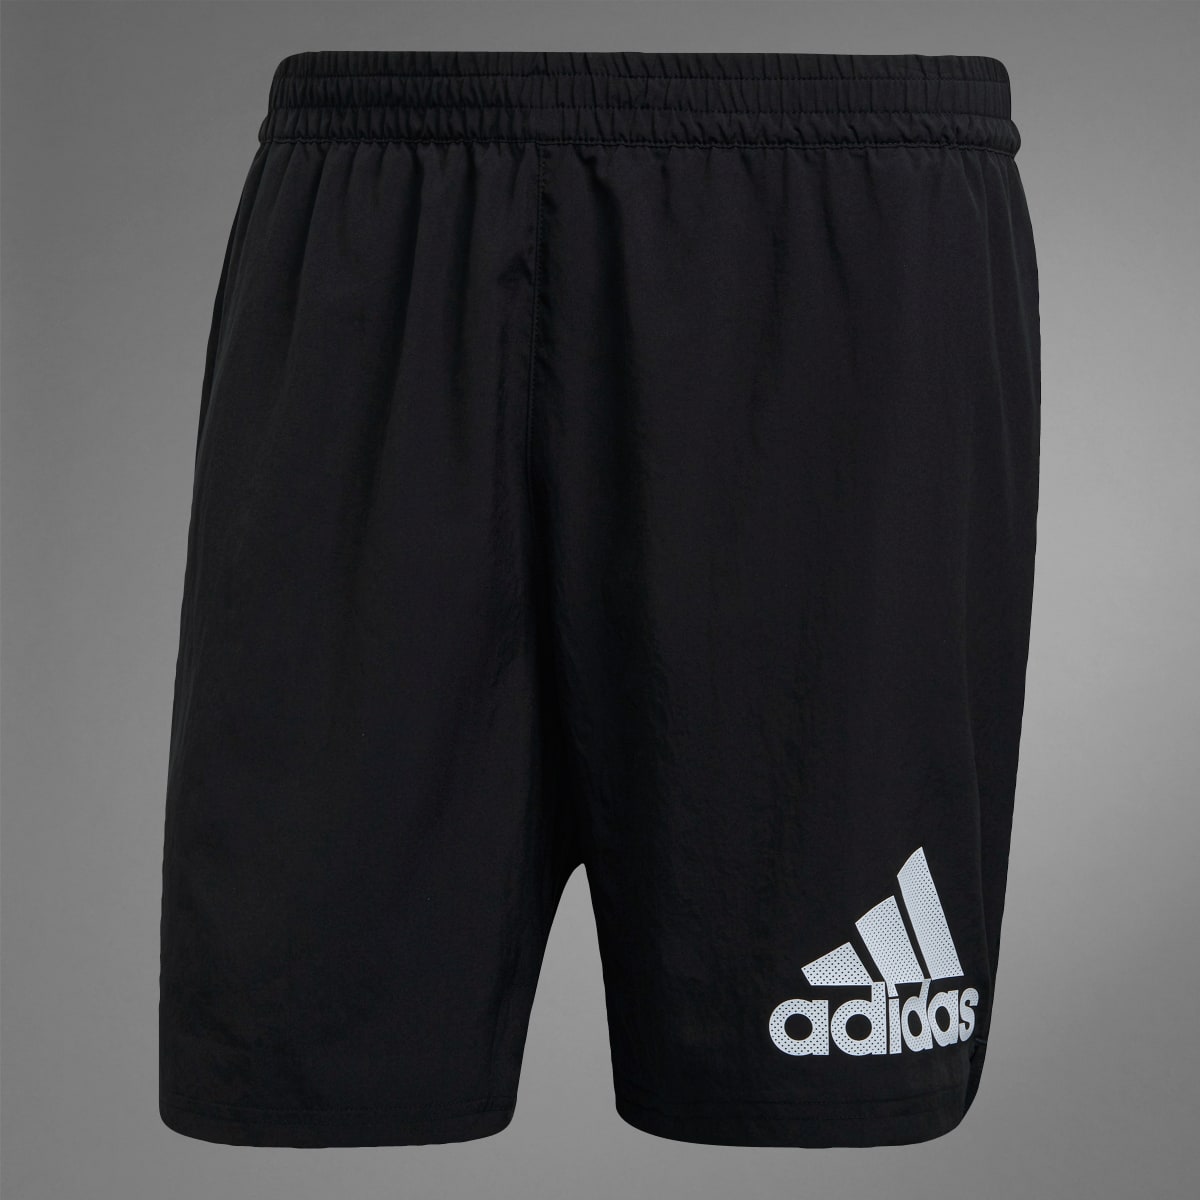 Adidas Run It Shorts. 11